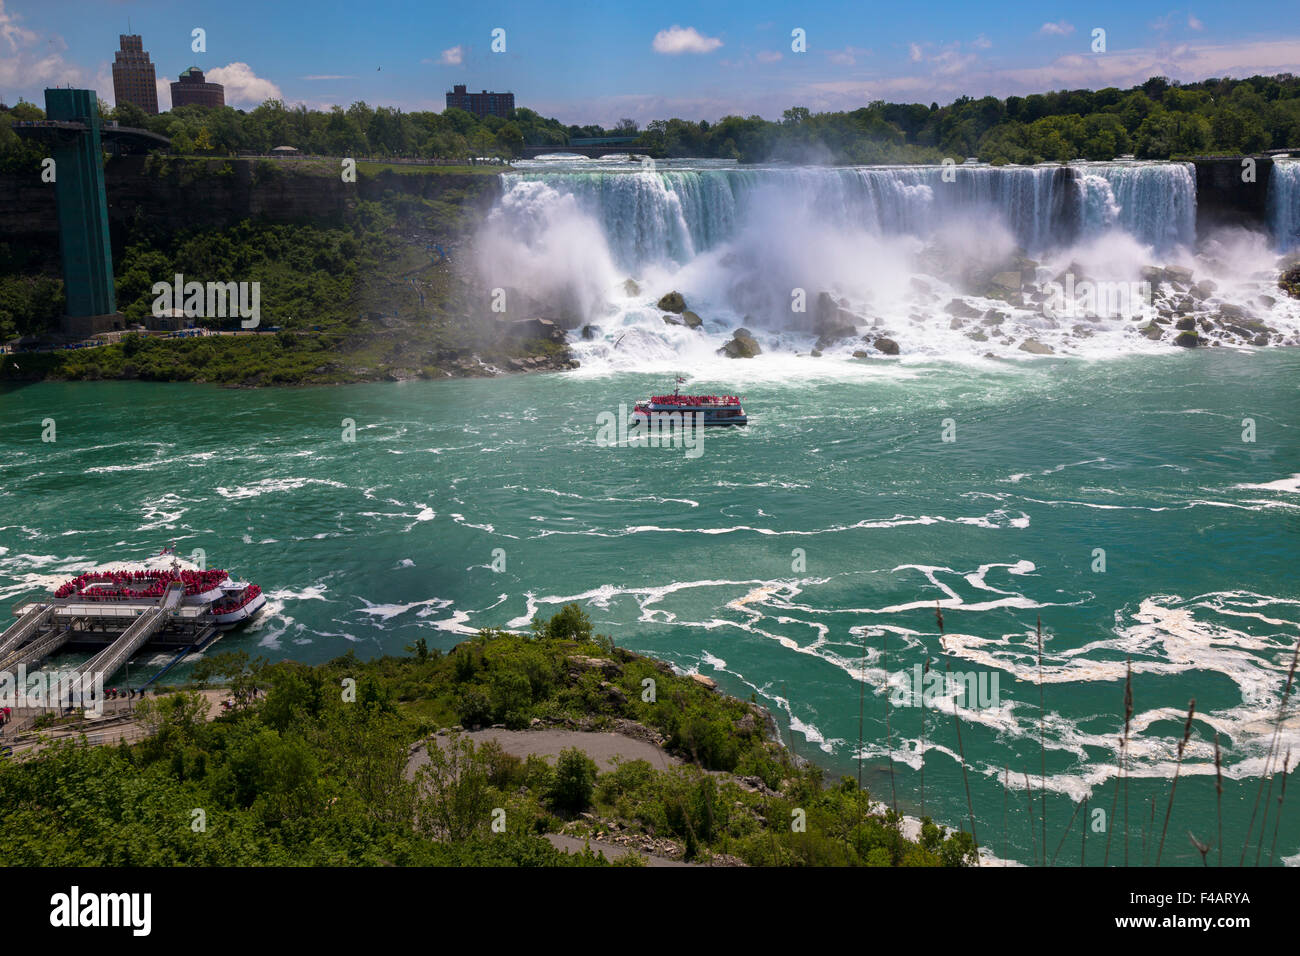 American Falls New York State gesehen von der Stadt Niagara Falls Kanada Stockfoto